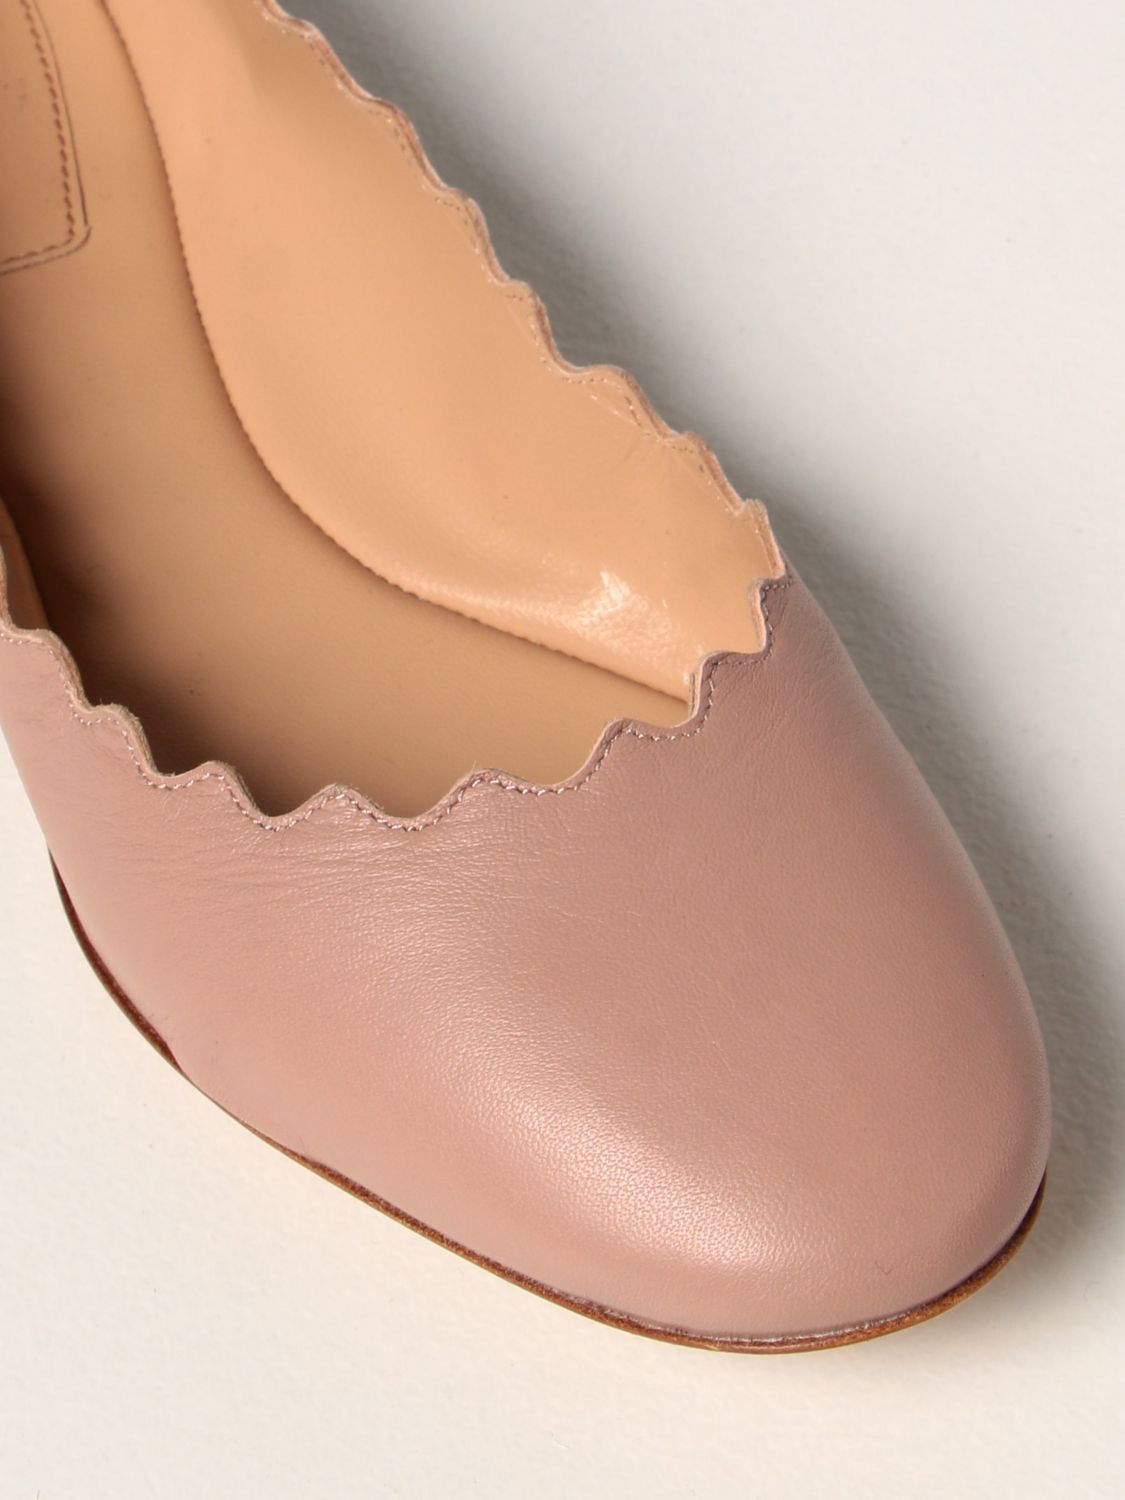 Ballet pumps Chloé: Lauren Chloé ballerina in leather pink 4